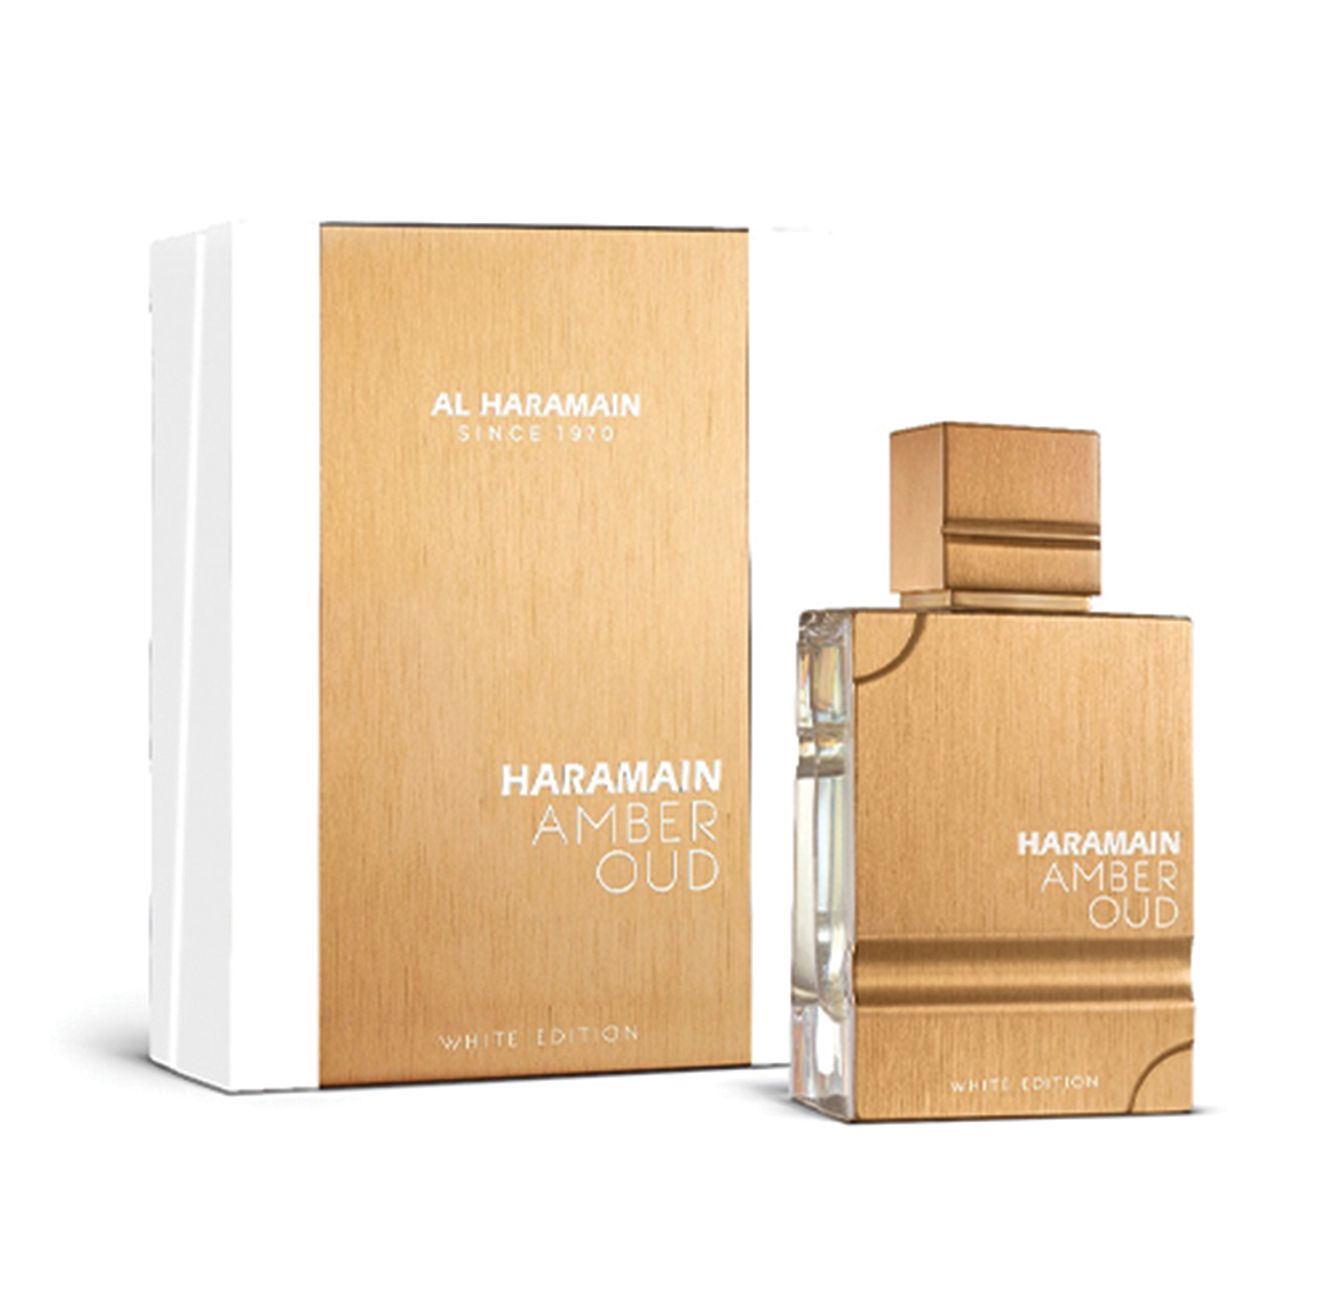 Al Haramain Amber Oud White Edition Eau De Perfum 100 ml